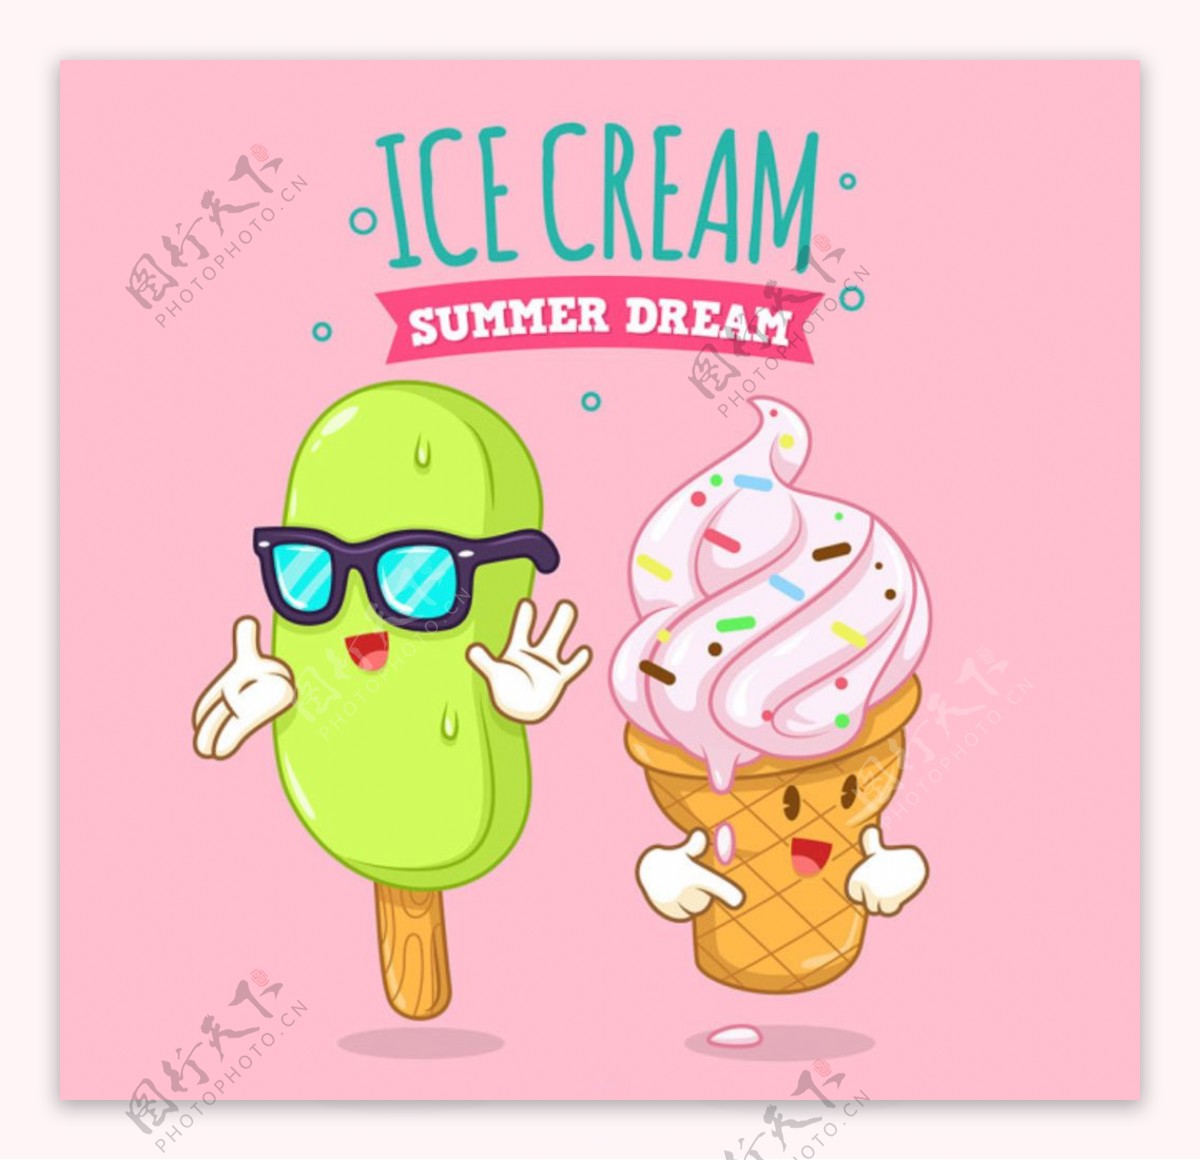 卡通风格彩色冰淇淋雪糕插图图片